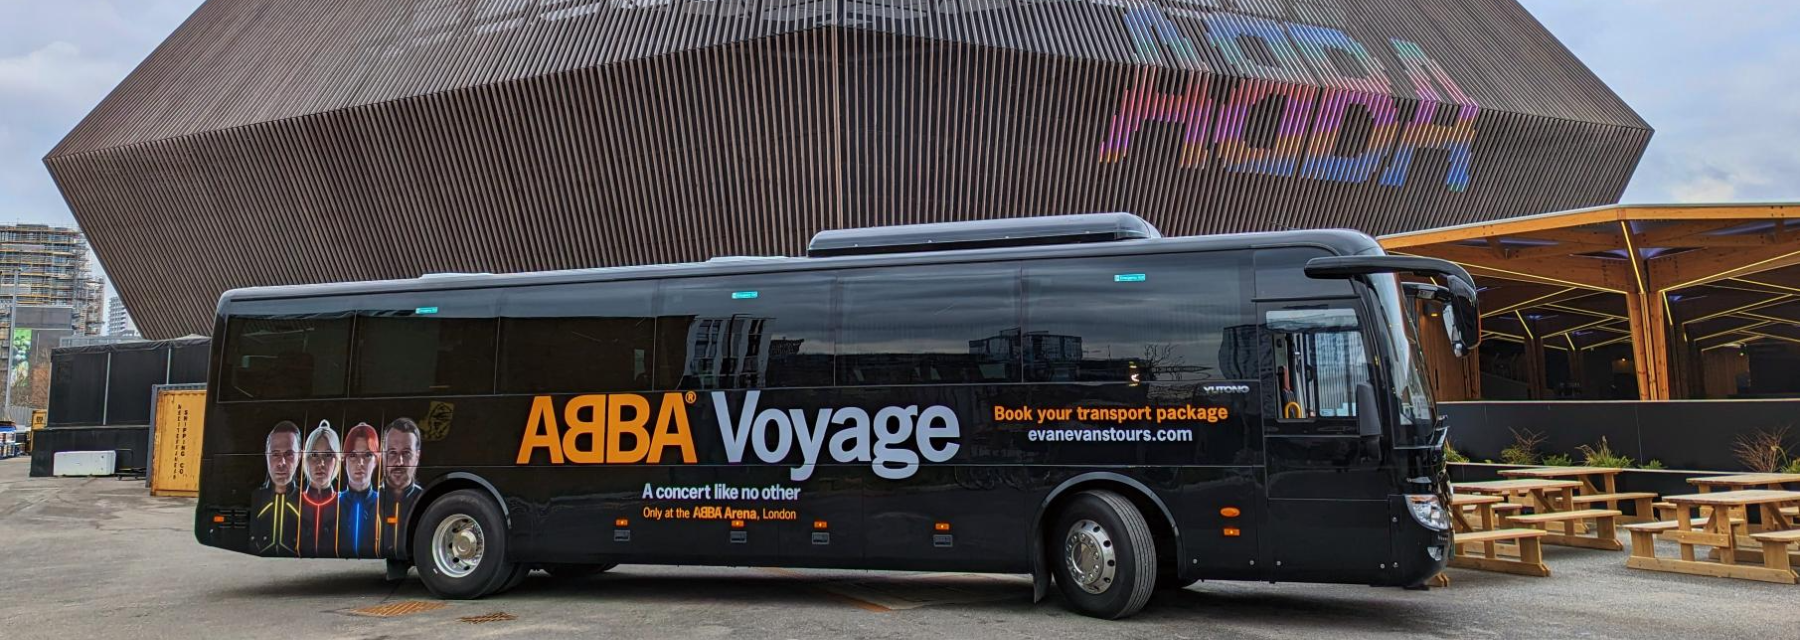 abba voyage coach tour